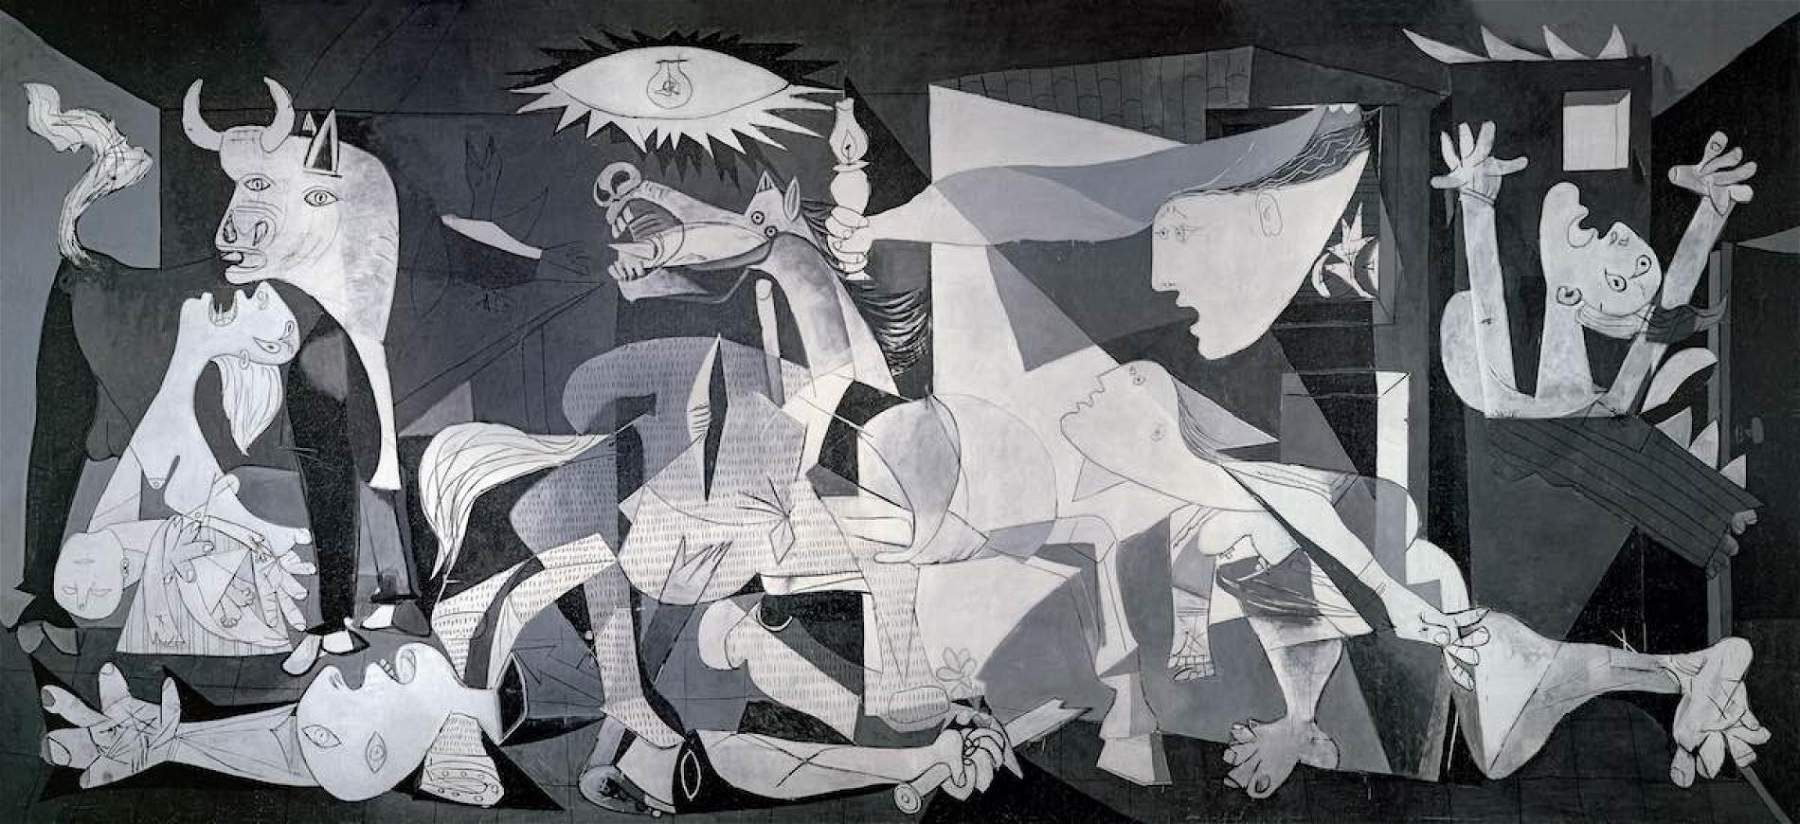 Spagna, al Museo Reina Sofía una tecnologia speciale per proteggere “Guernica” di Picasso dal fuoco